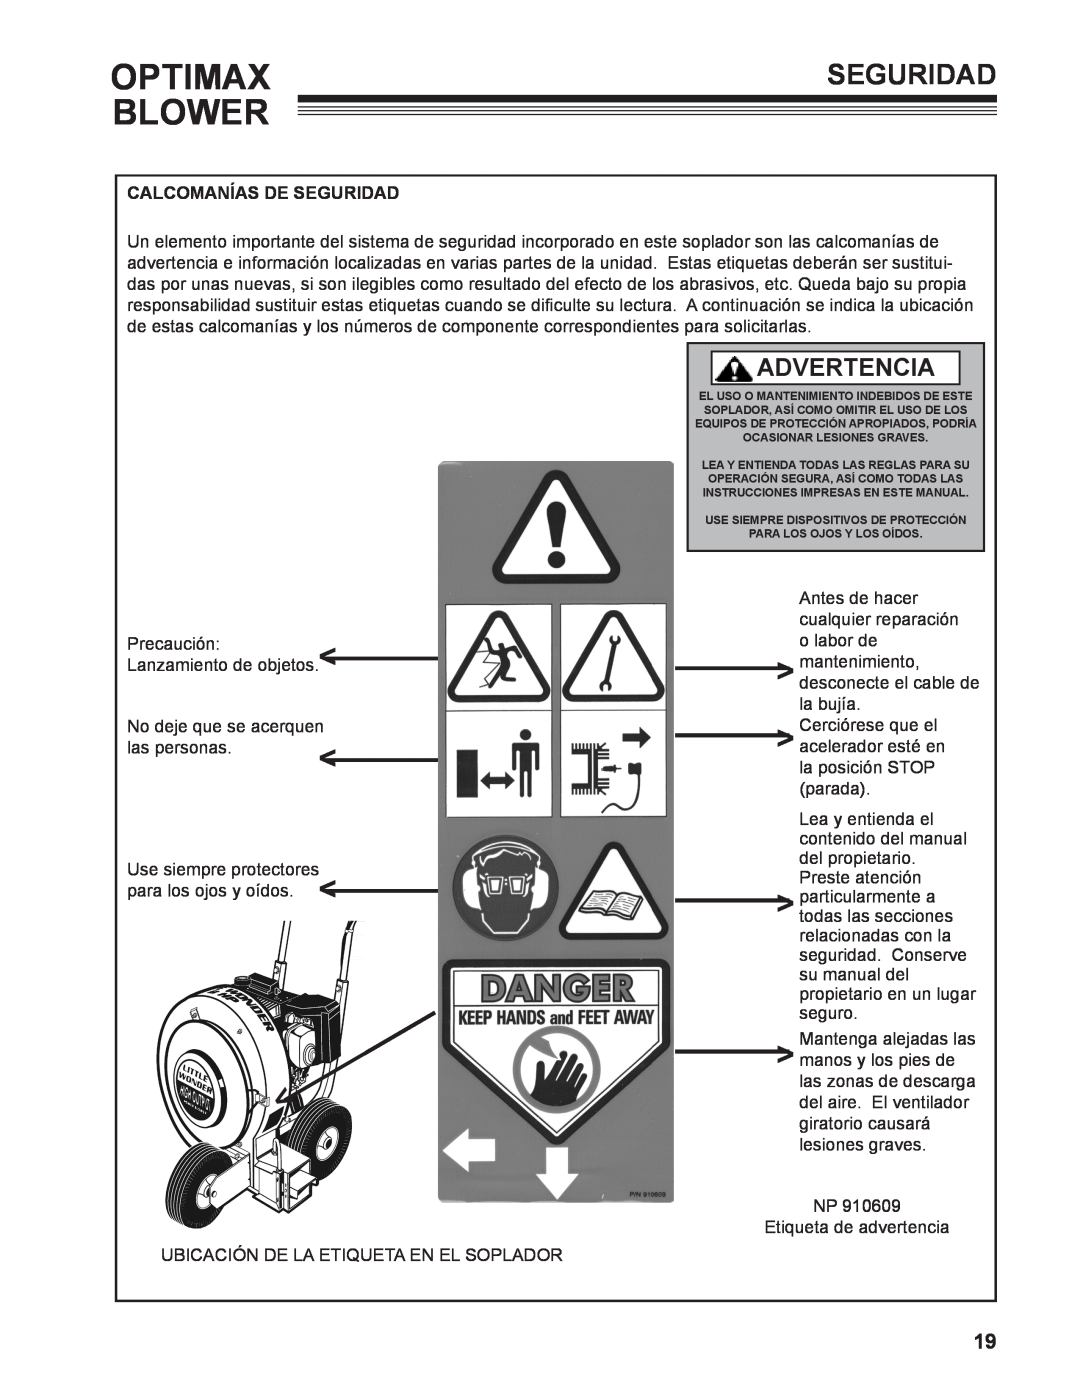 Little Wonder LB601-00-01 technical manual Optimax Blower, Advertencia, Calcomanías De Seguridad 